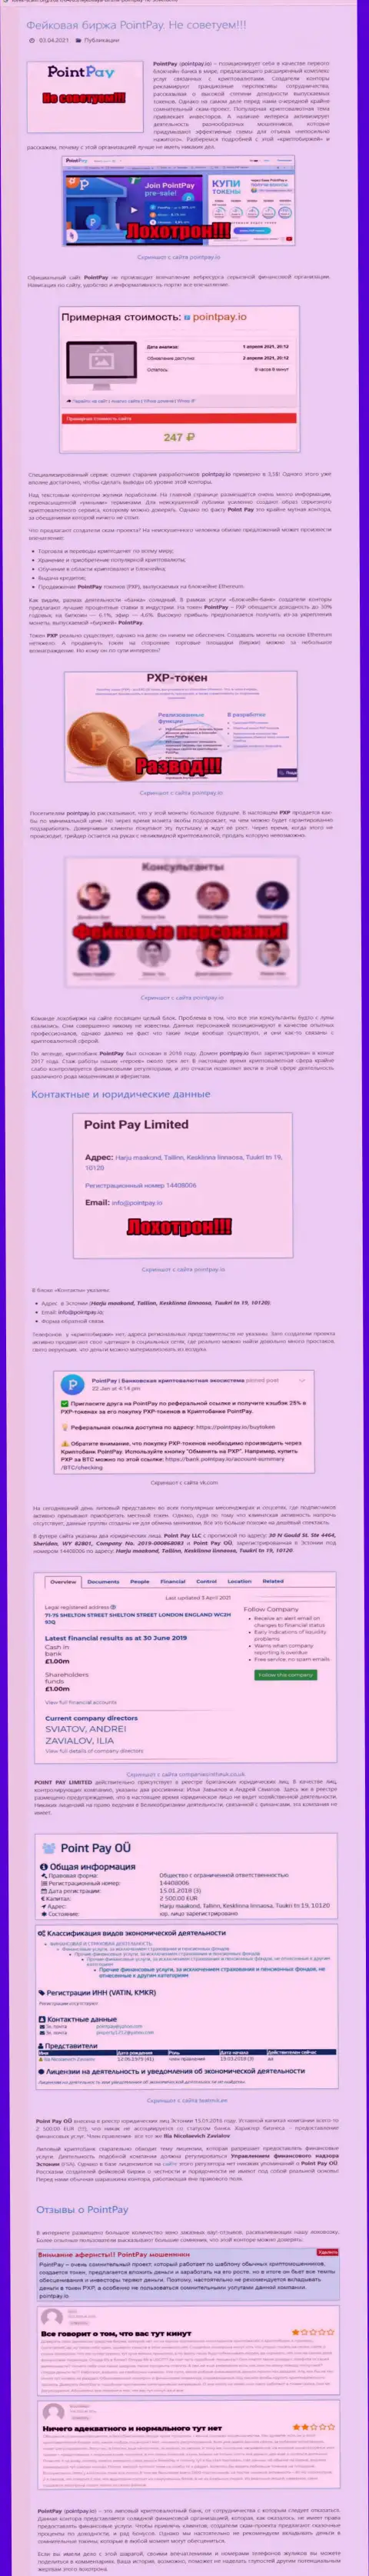 Статья о мошеннических условиях совместного сотрудничества в компании PointPay Io